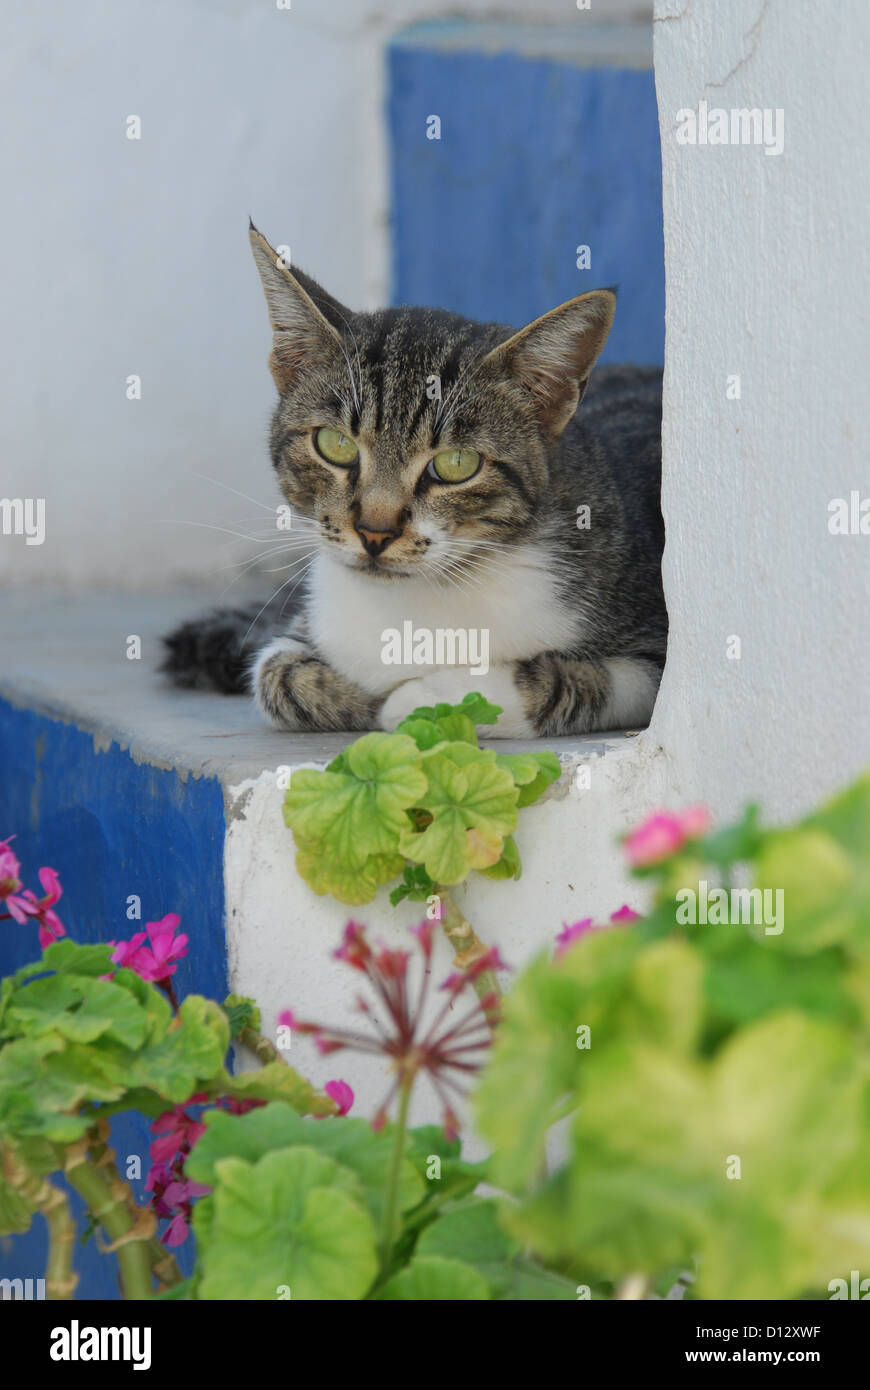 Hauskatze, Tabby mit Weiss, liegt auf einer blau-weissen Treppe mit rosa Geranien, Kykladen, Griechenland, gatto, Tabby e bianco, Foto Stock